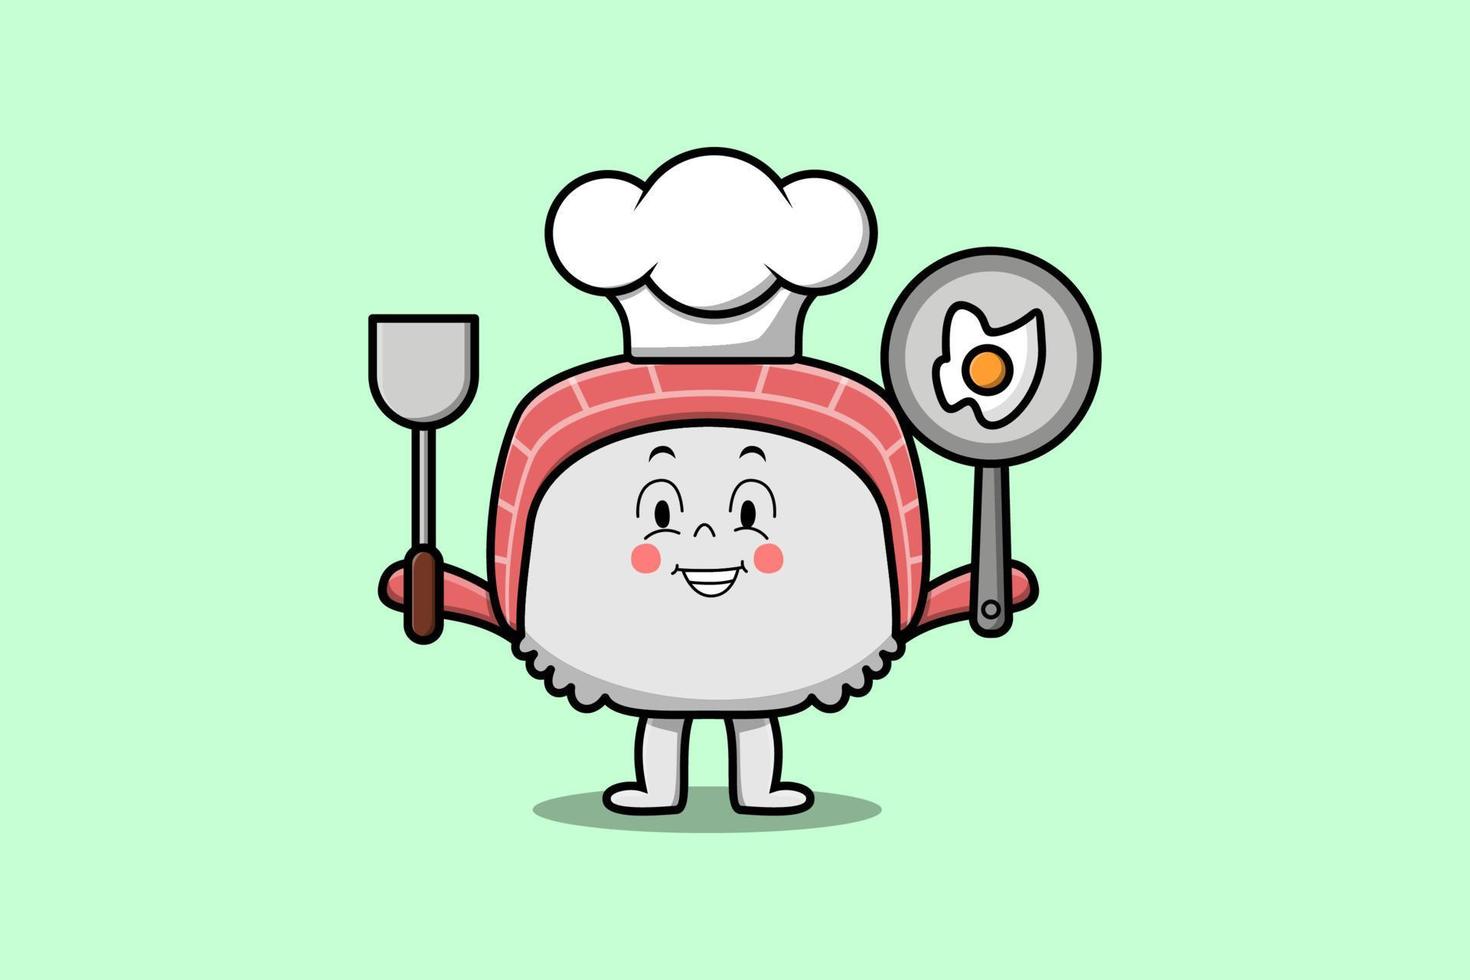 lindo chef de sushi de dibujos animados sosteniendo pan y espátula vector